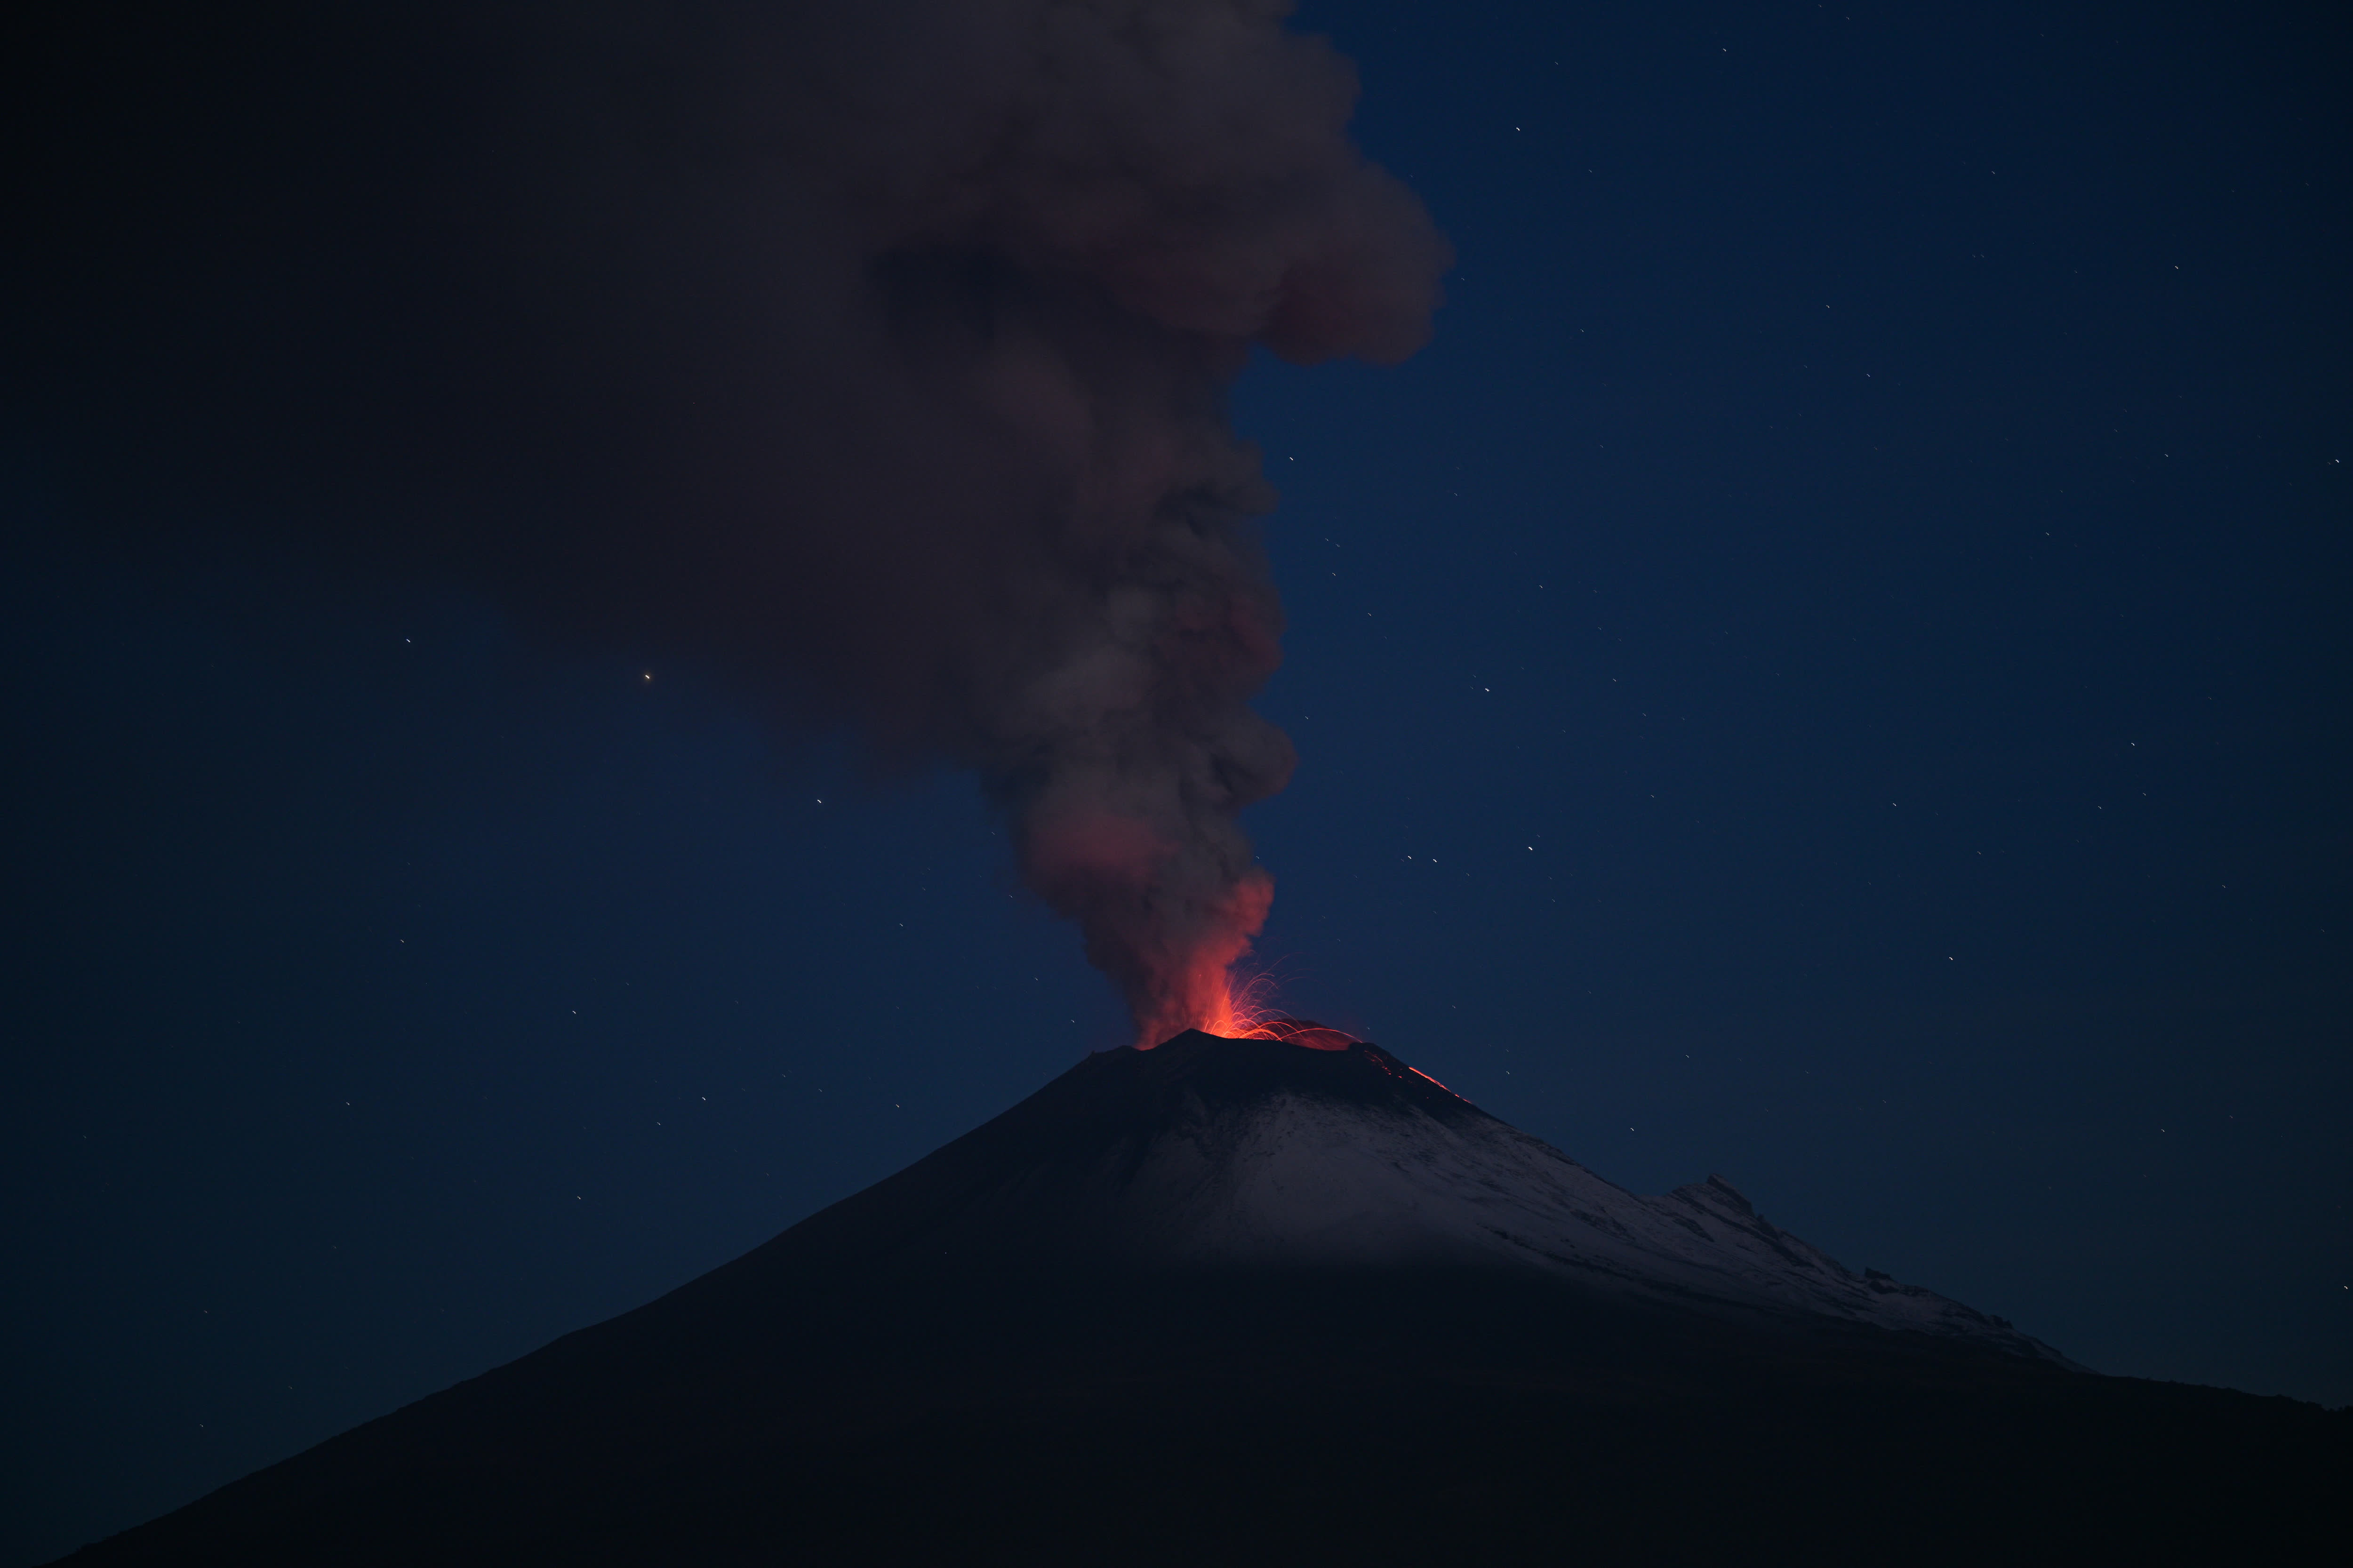 這是5月22日在墨西哥普埃布拉州拍攝的波波卡特佩特火山。